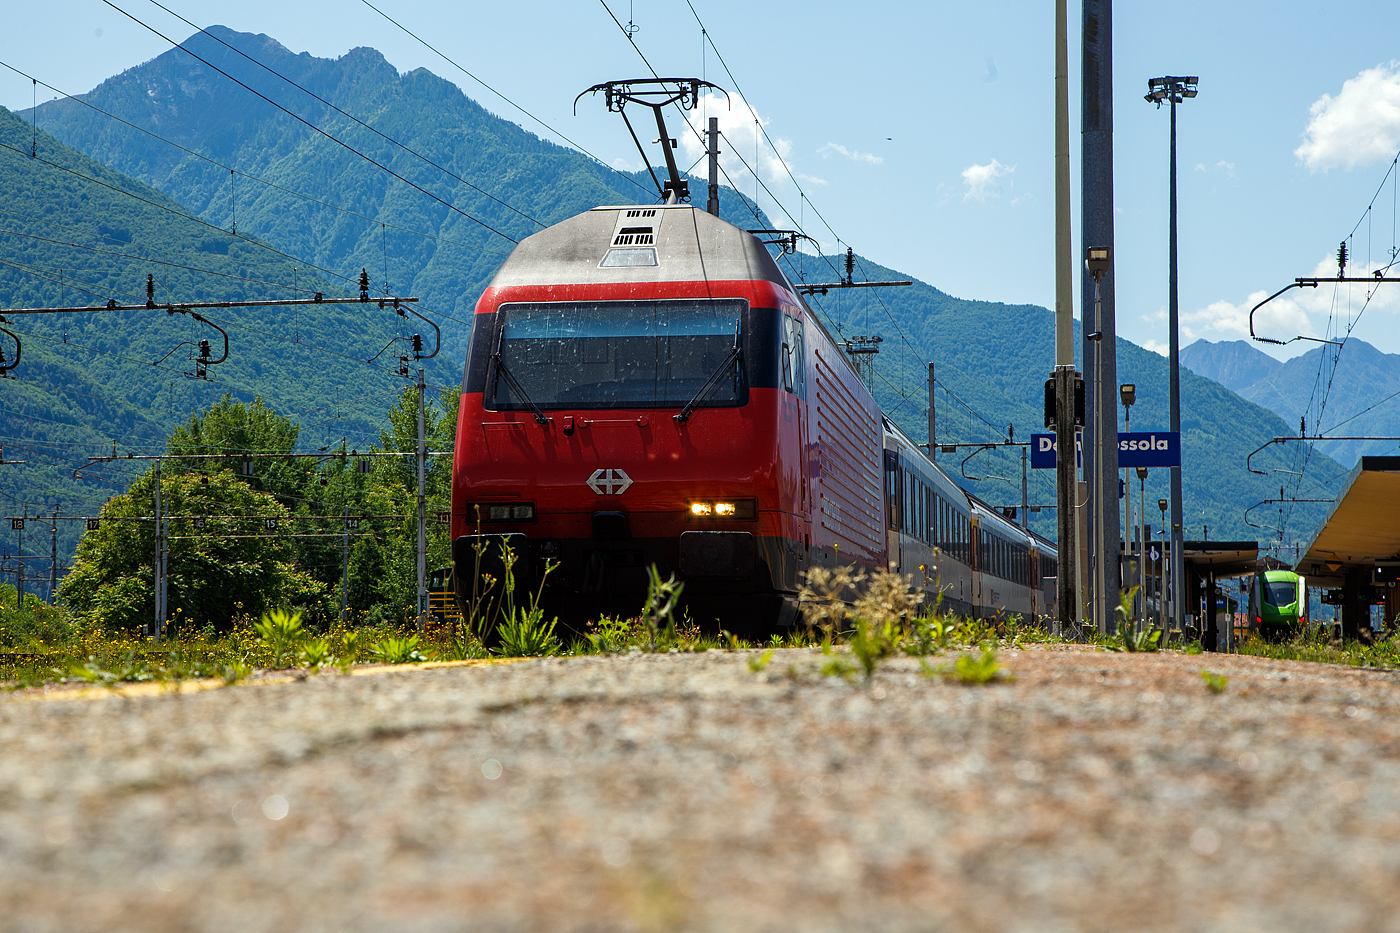 Die SBB Re 460 016-0  Rohrdorferberg Reusstal   (91 85 4 460 016-0 CH-SBB) hat am 26 Mai 2023 mit dem IR 3017 (Brig – Domodossola) den Zielbahnhof Domodossola (I) erreicht und ist nun mit dem Zug auf Gleis 6 abgestellt. Nach gut 2 ½ Stunden (um 13:48 Uhr) geht es dann als IR3022 von Domodossola zurck nach Brig.

Die Lok2000 wurde 1992 von der SLM (Schweizerischen Lokomotiv- und Maschinenfabrik in Winterthur) unter der Fabriknummer 5477 gebaut, der elektrische Teil ist von der ABB (Asea Brown Boveri). Sie war 2015 der 2. Prototyp der im SBB Werk Yverdon-les-Bains (VD) das vollstndige Modernisierungs-/Refit-Programm LOK2000 durchlief. So sollen die Loks fit fr die nchsten 20 Jahre sein, zudem werden durch alle 119 SBB Re 460 Lokomotiven so etwa 30 Gigawattstunden Energie eingespart.